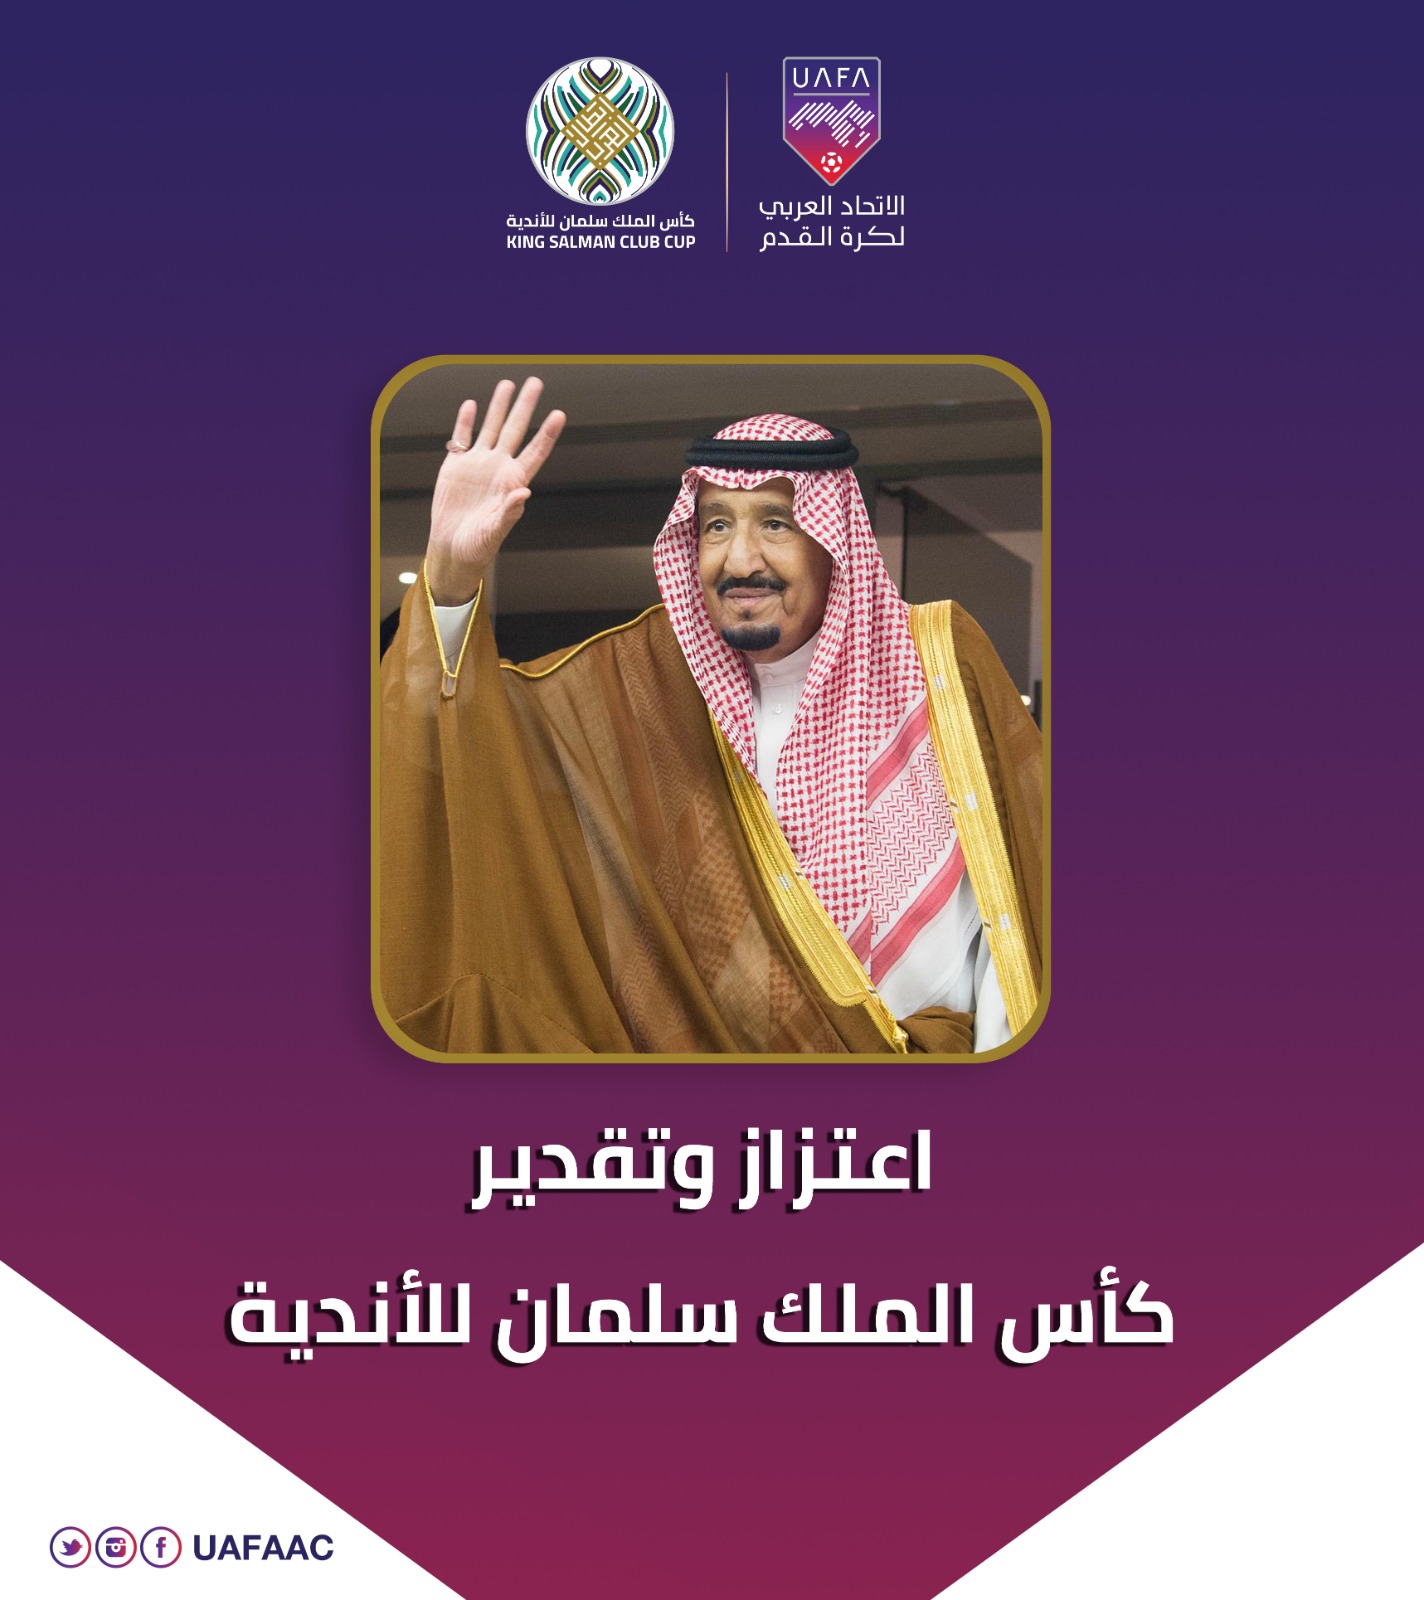 الاتحاد العربي يطلق  كأس الملك سلمان  للأندية الأبطال